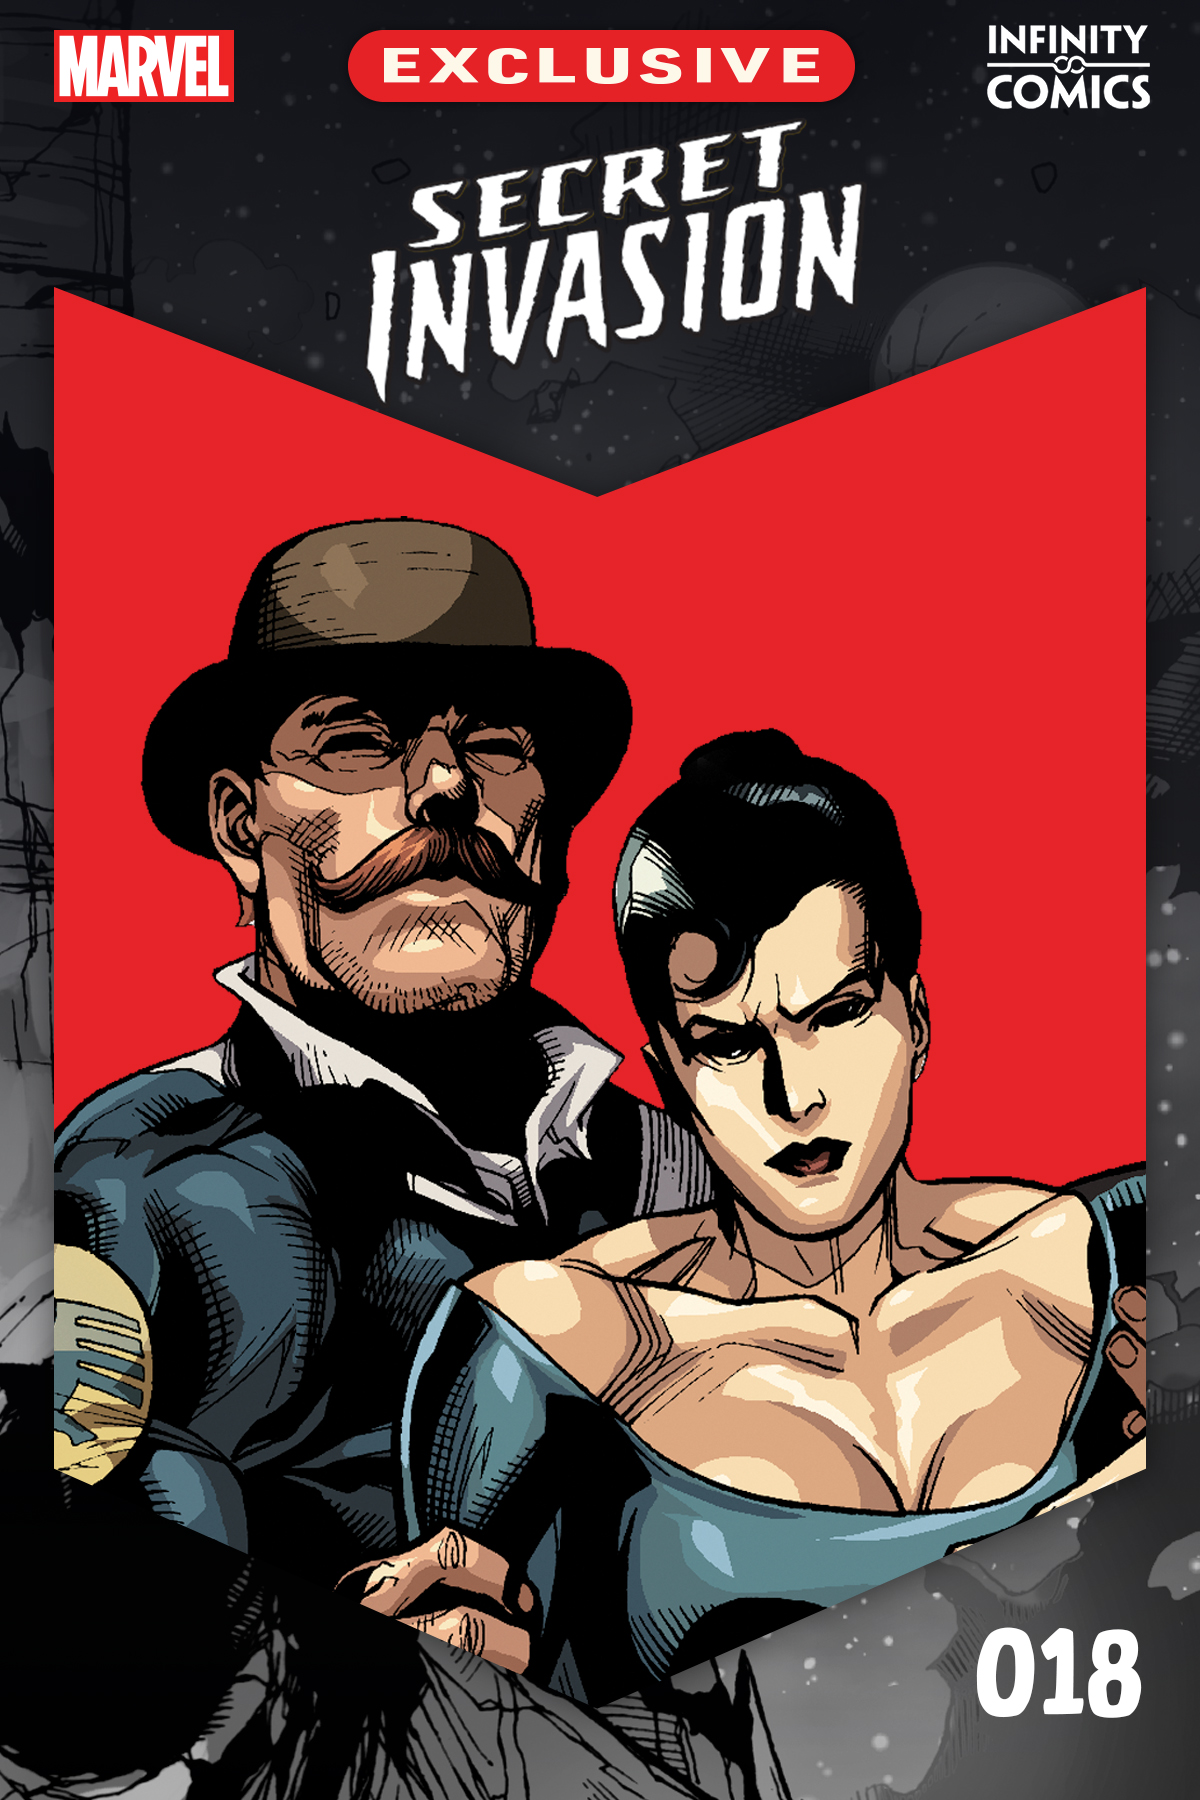 Secret Invasion Infinity Comic (2023) #18